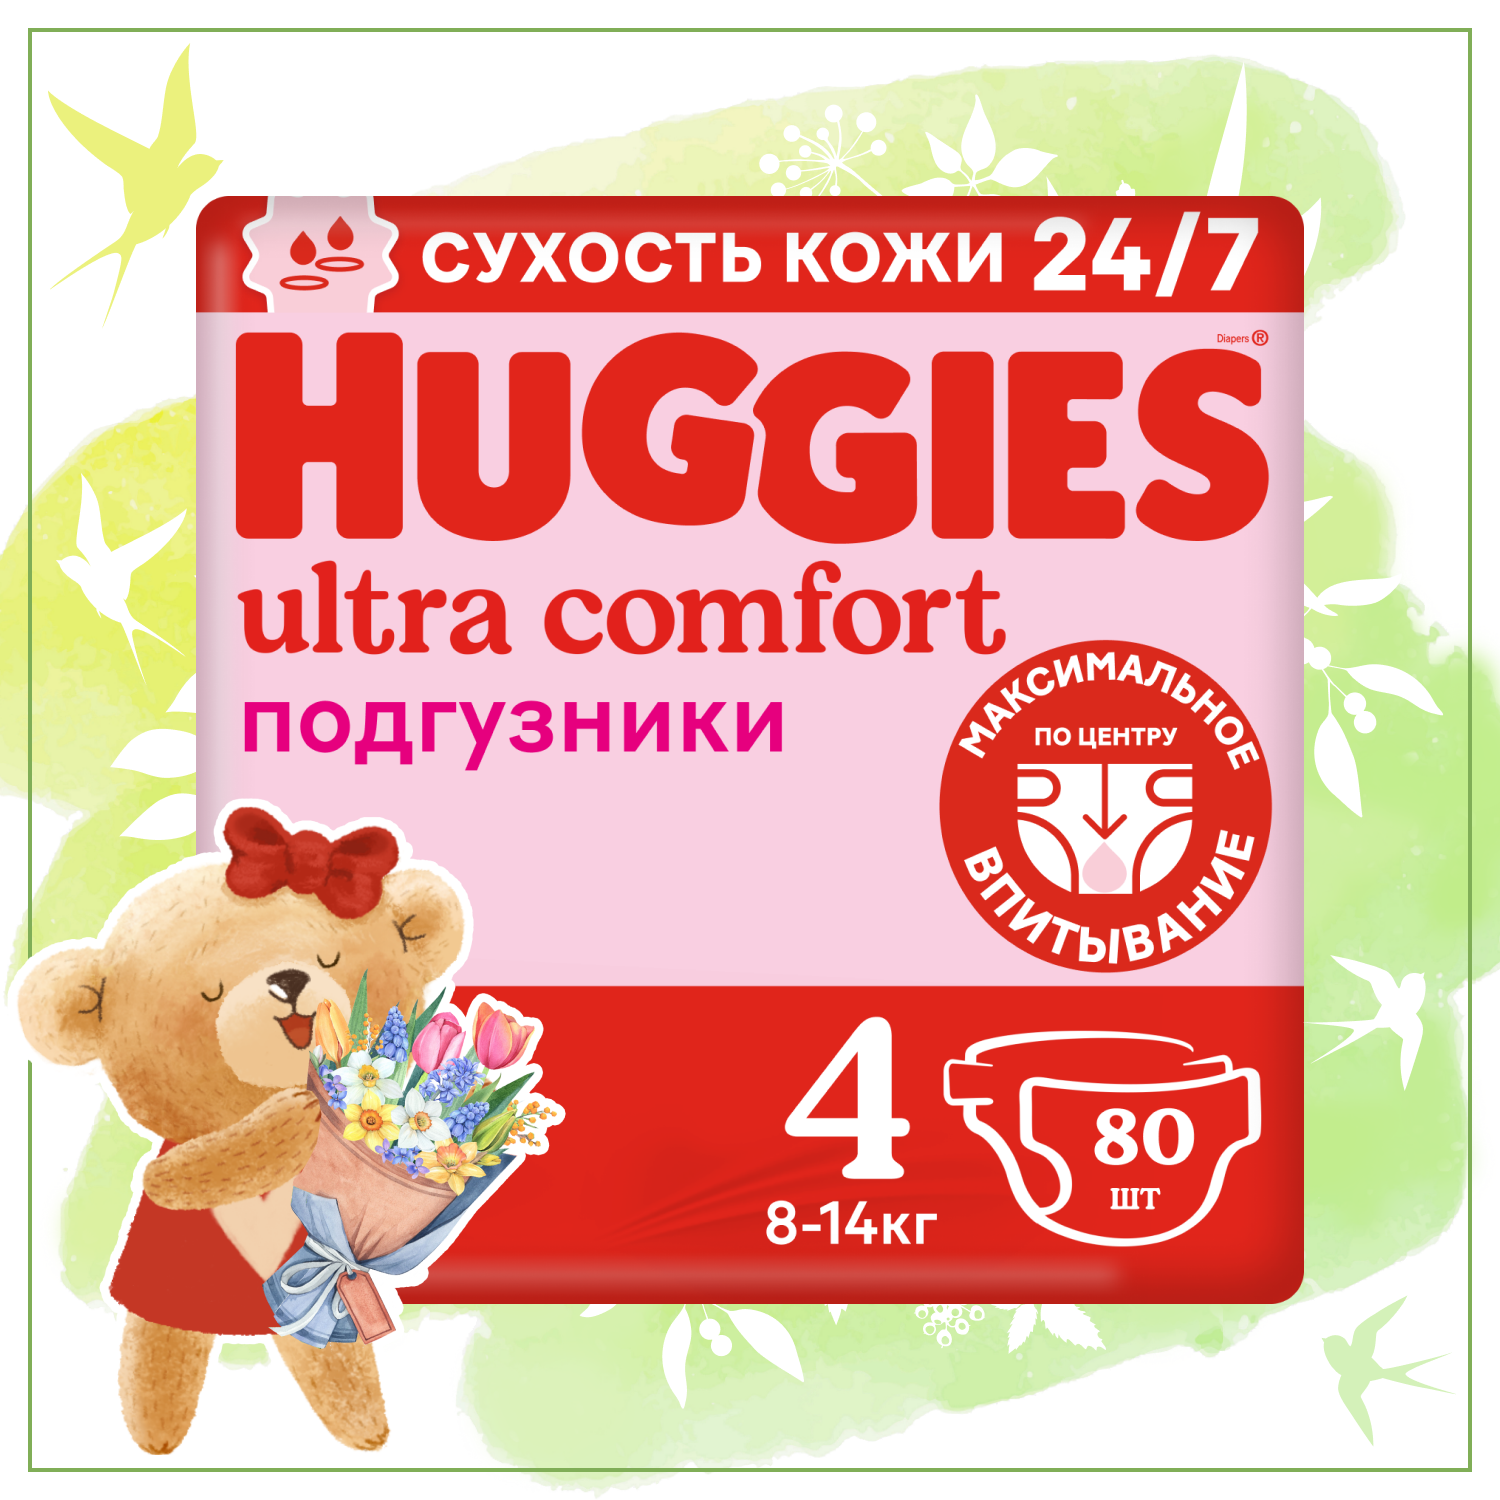 Подгузники для девочек Huggies Ultra Comfort 4 8-14кг 80шт - фото 1